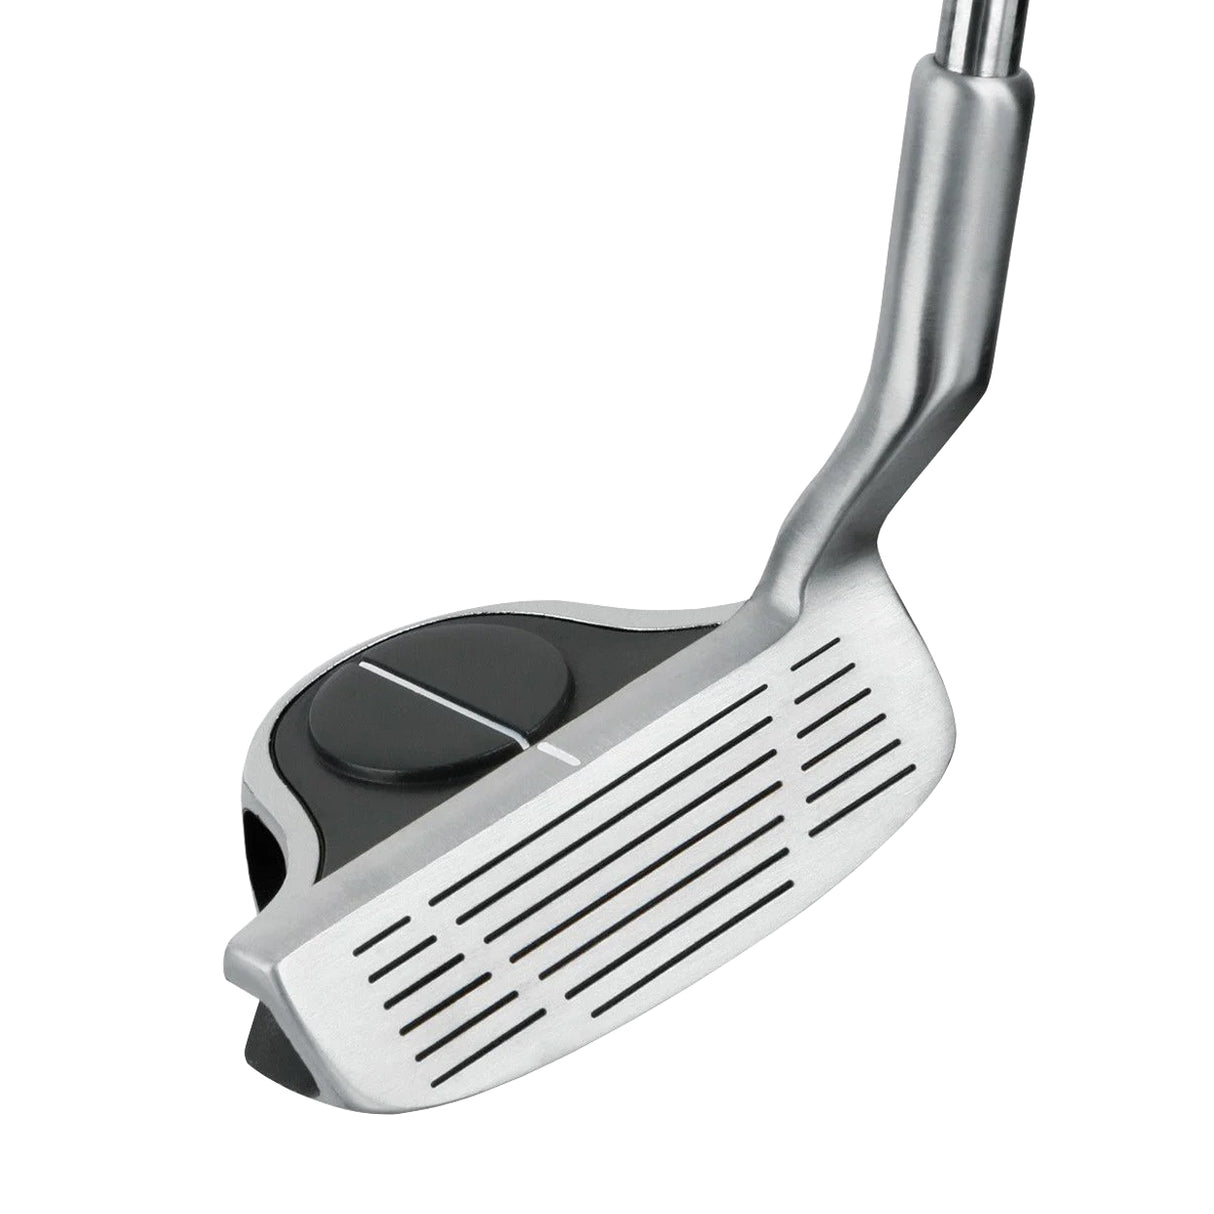 Intech Golf EZ-Roll Chipping Iron